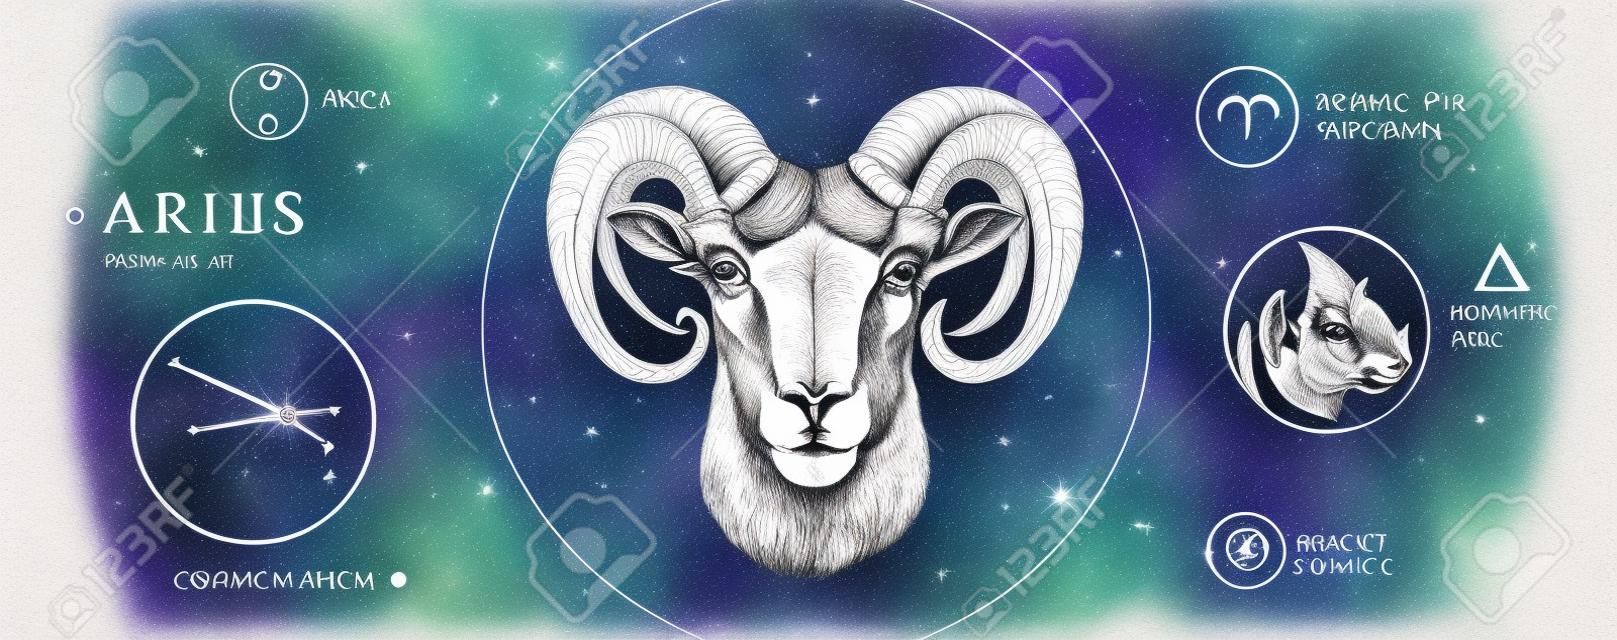 Cartão de bruxaria mágica moderna com astrologia signo do zodíaco de Áries. Mão realista desenho carneiro ou cabeça de mouflon. Característica do zodíaco